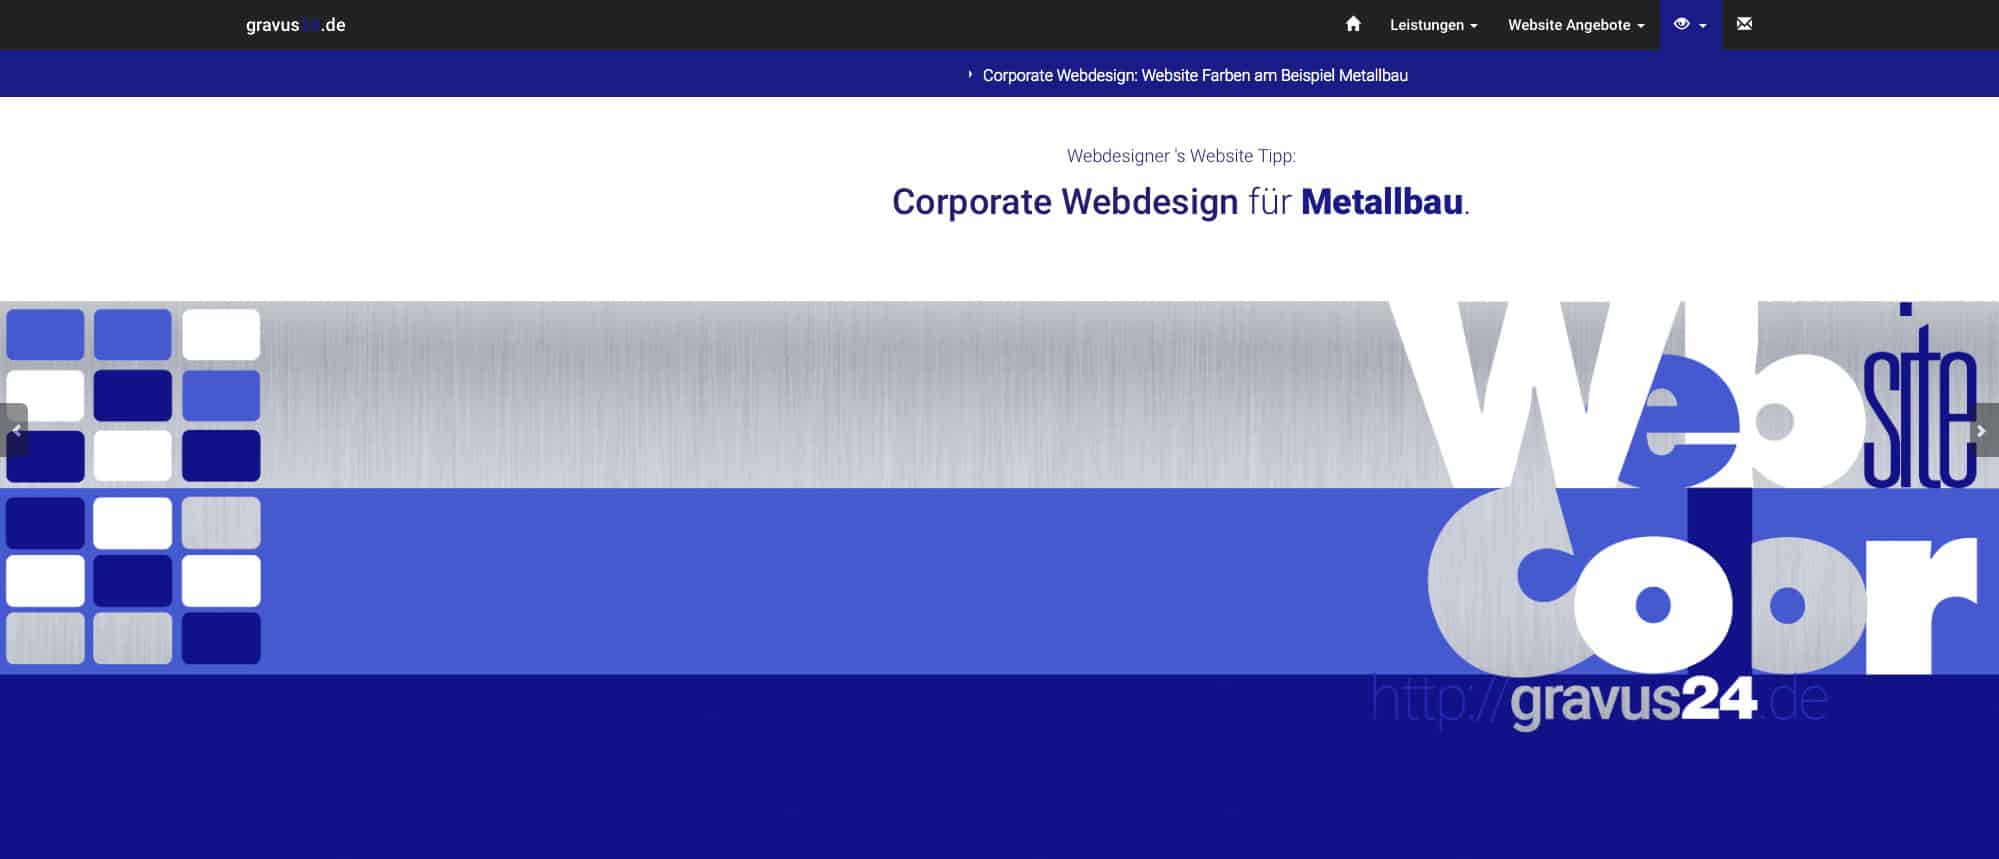 webdesigner farbtipp metallbau